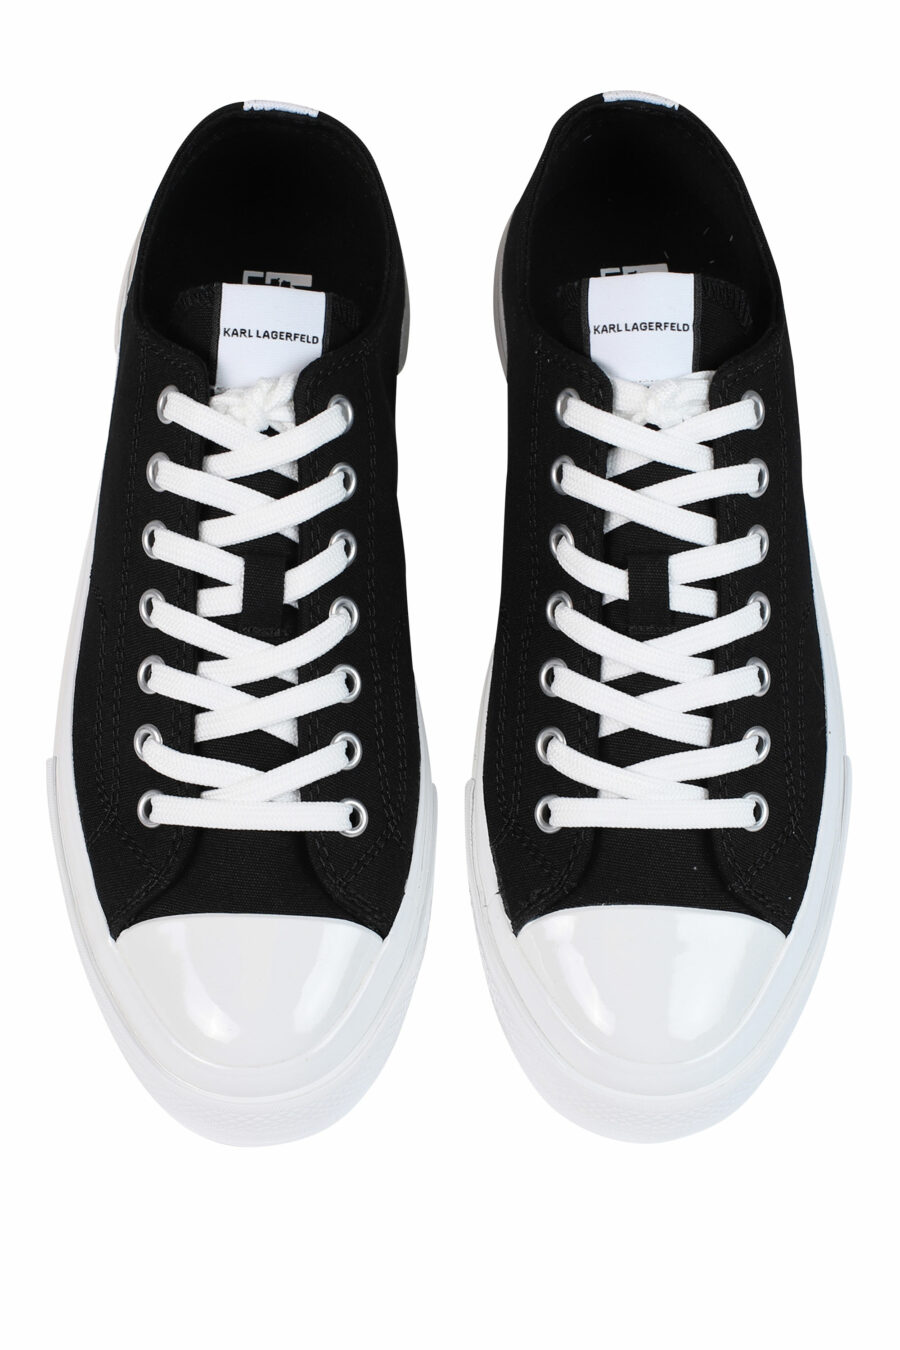 Zapatillas negras con logo "karl" y suela blanca - 5059529249655 5